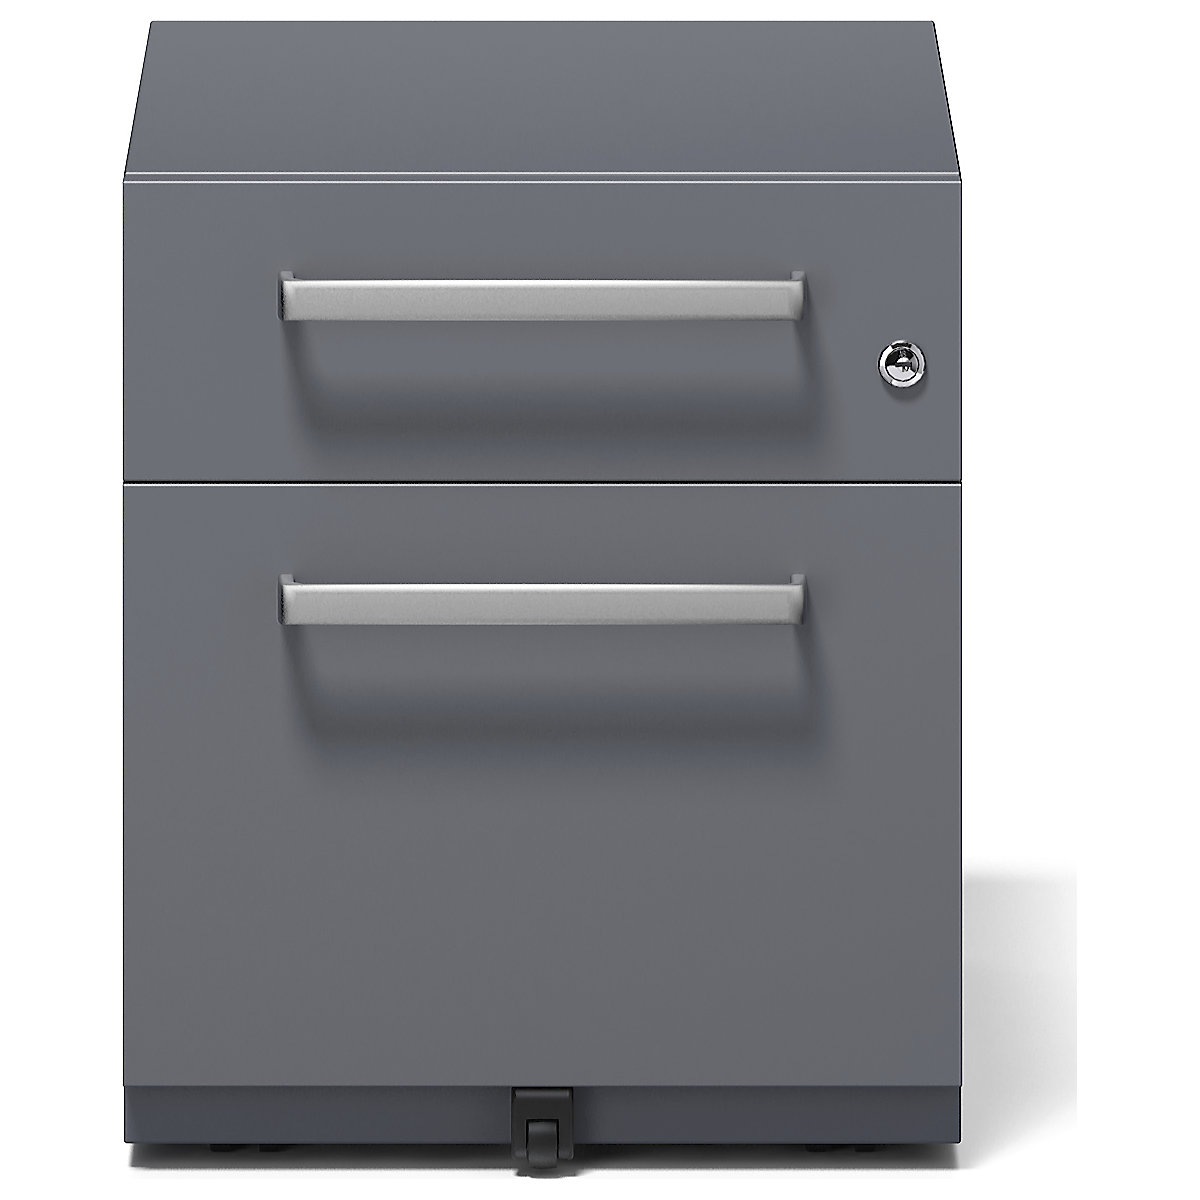 Buck rodante Note™ con 1 archivador colgante y 1 cajón universal – BISLEY (Imagen del producto 13)